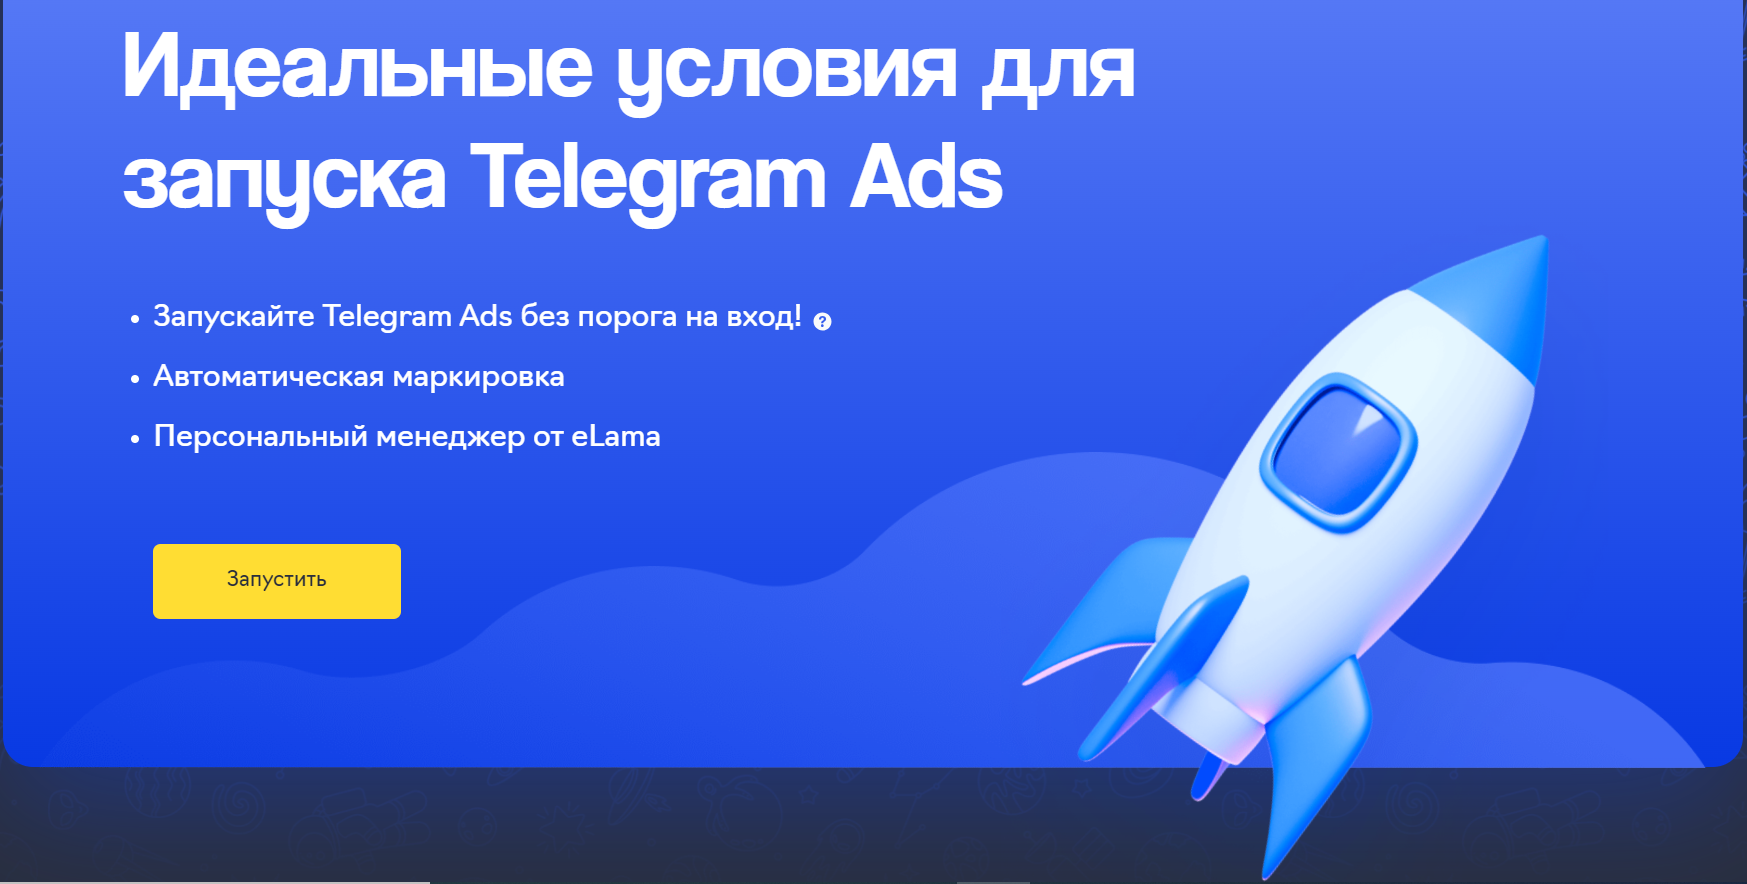 0 ₽ для старта в Telegram Ads и персональный менеджер eLama